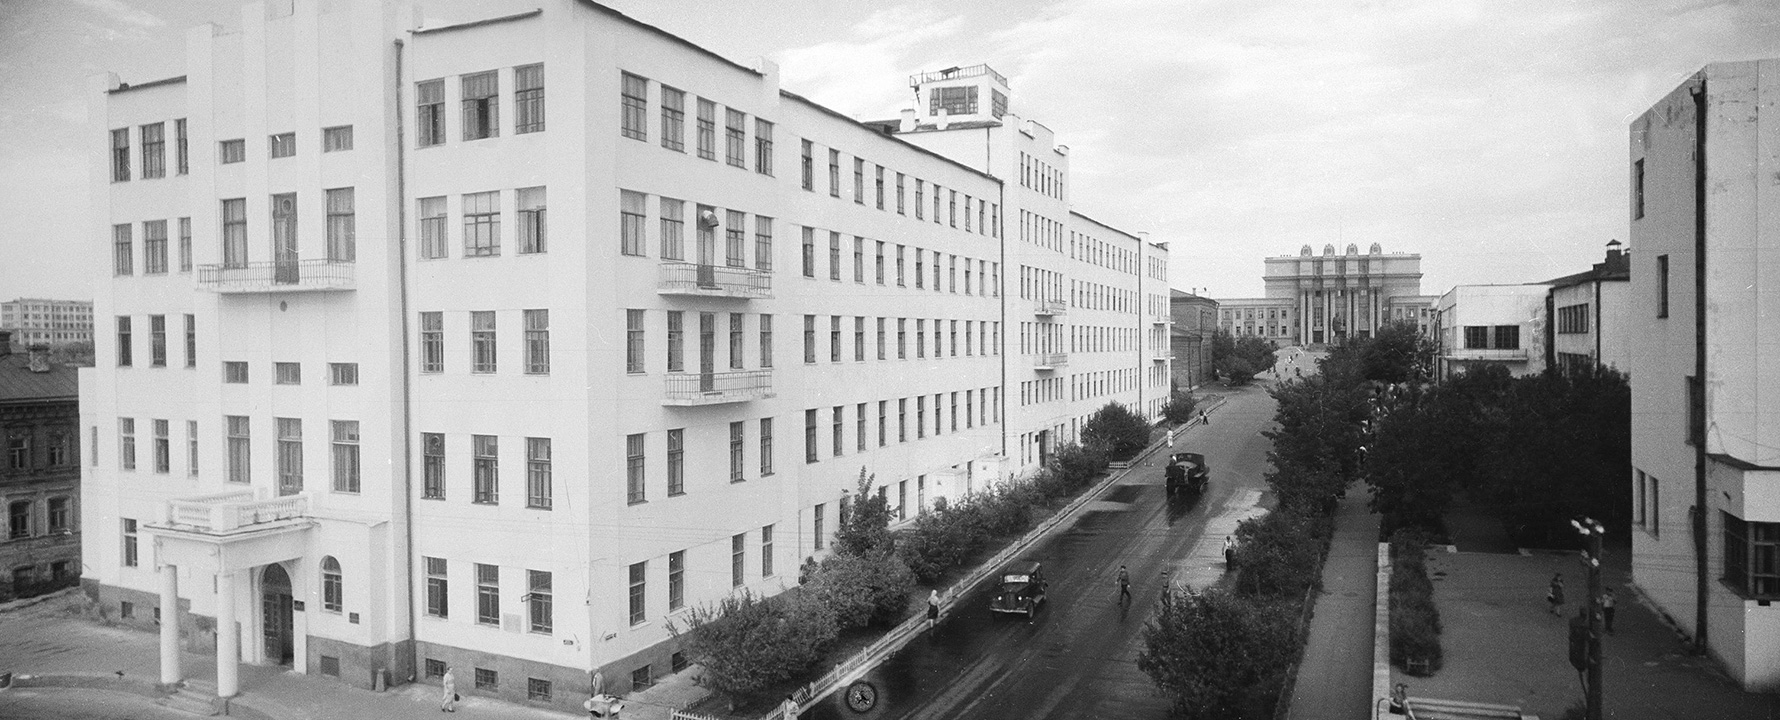 Самара, Улица Шостаковича, 2 / улица Фрунзе, 167. Самара — Исторические фото (до 2000 года)